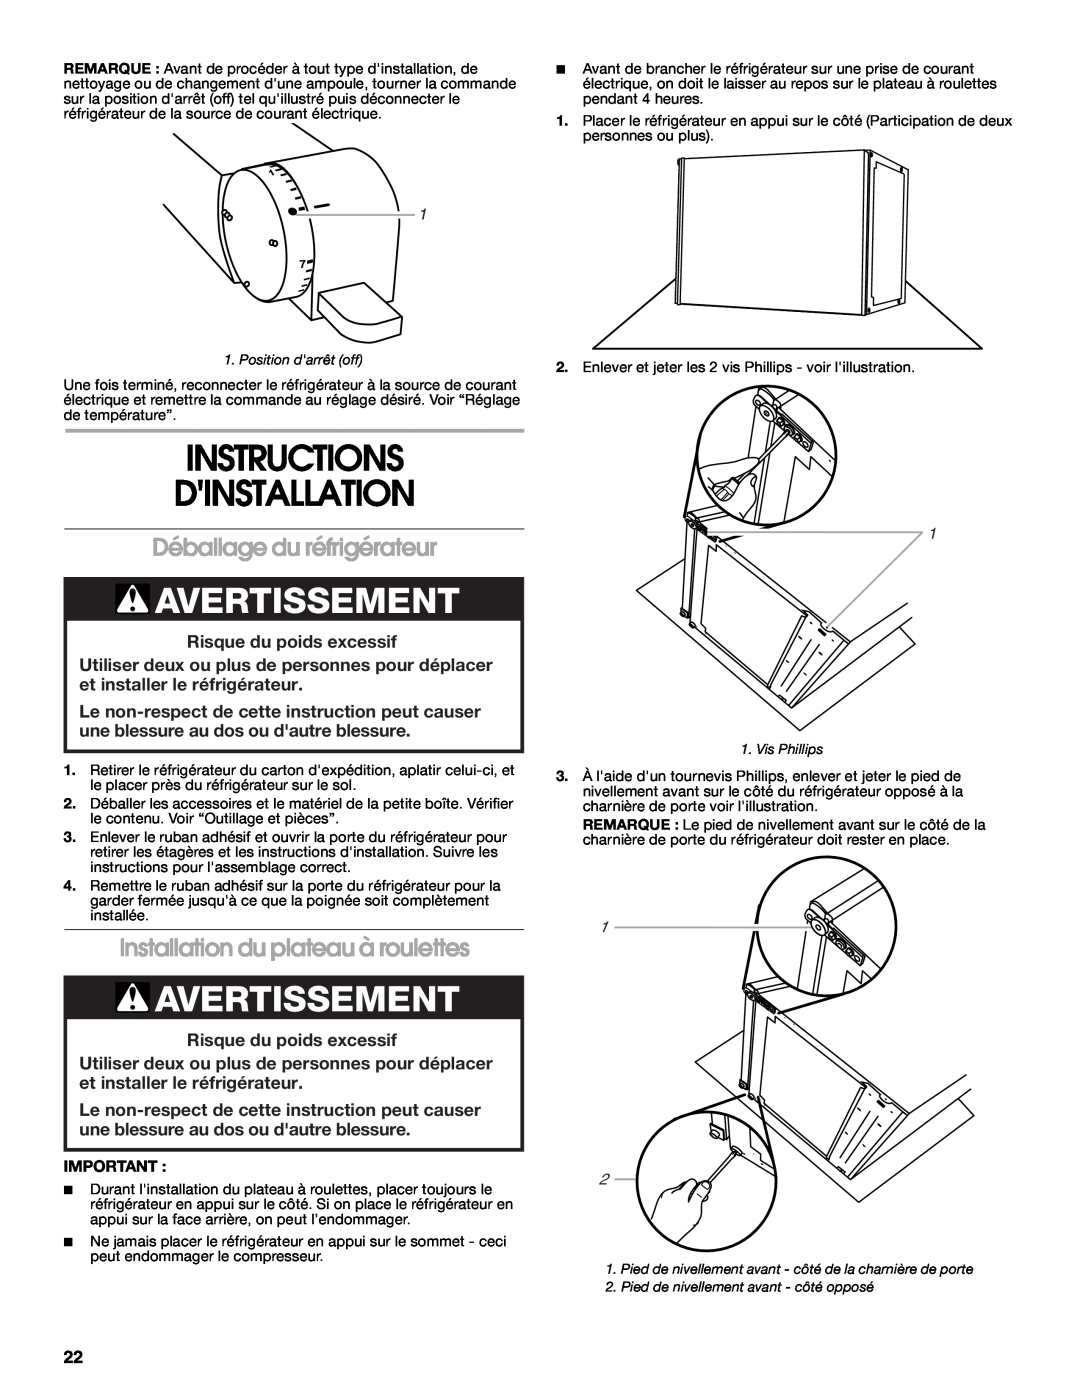 Whirlpool GARF06XXMG00 Instructions Dinstallation, Avertissement, Déballage du réfrigérateur, Risque du poids excessif 